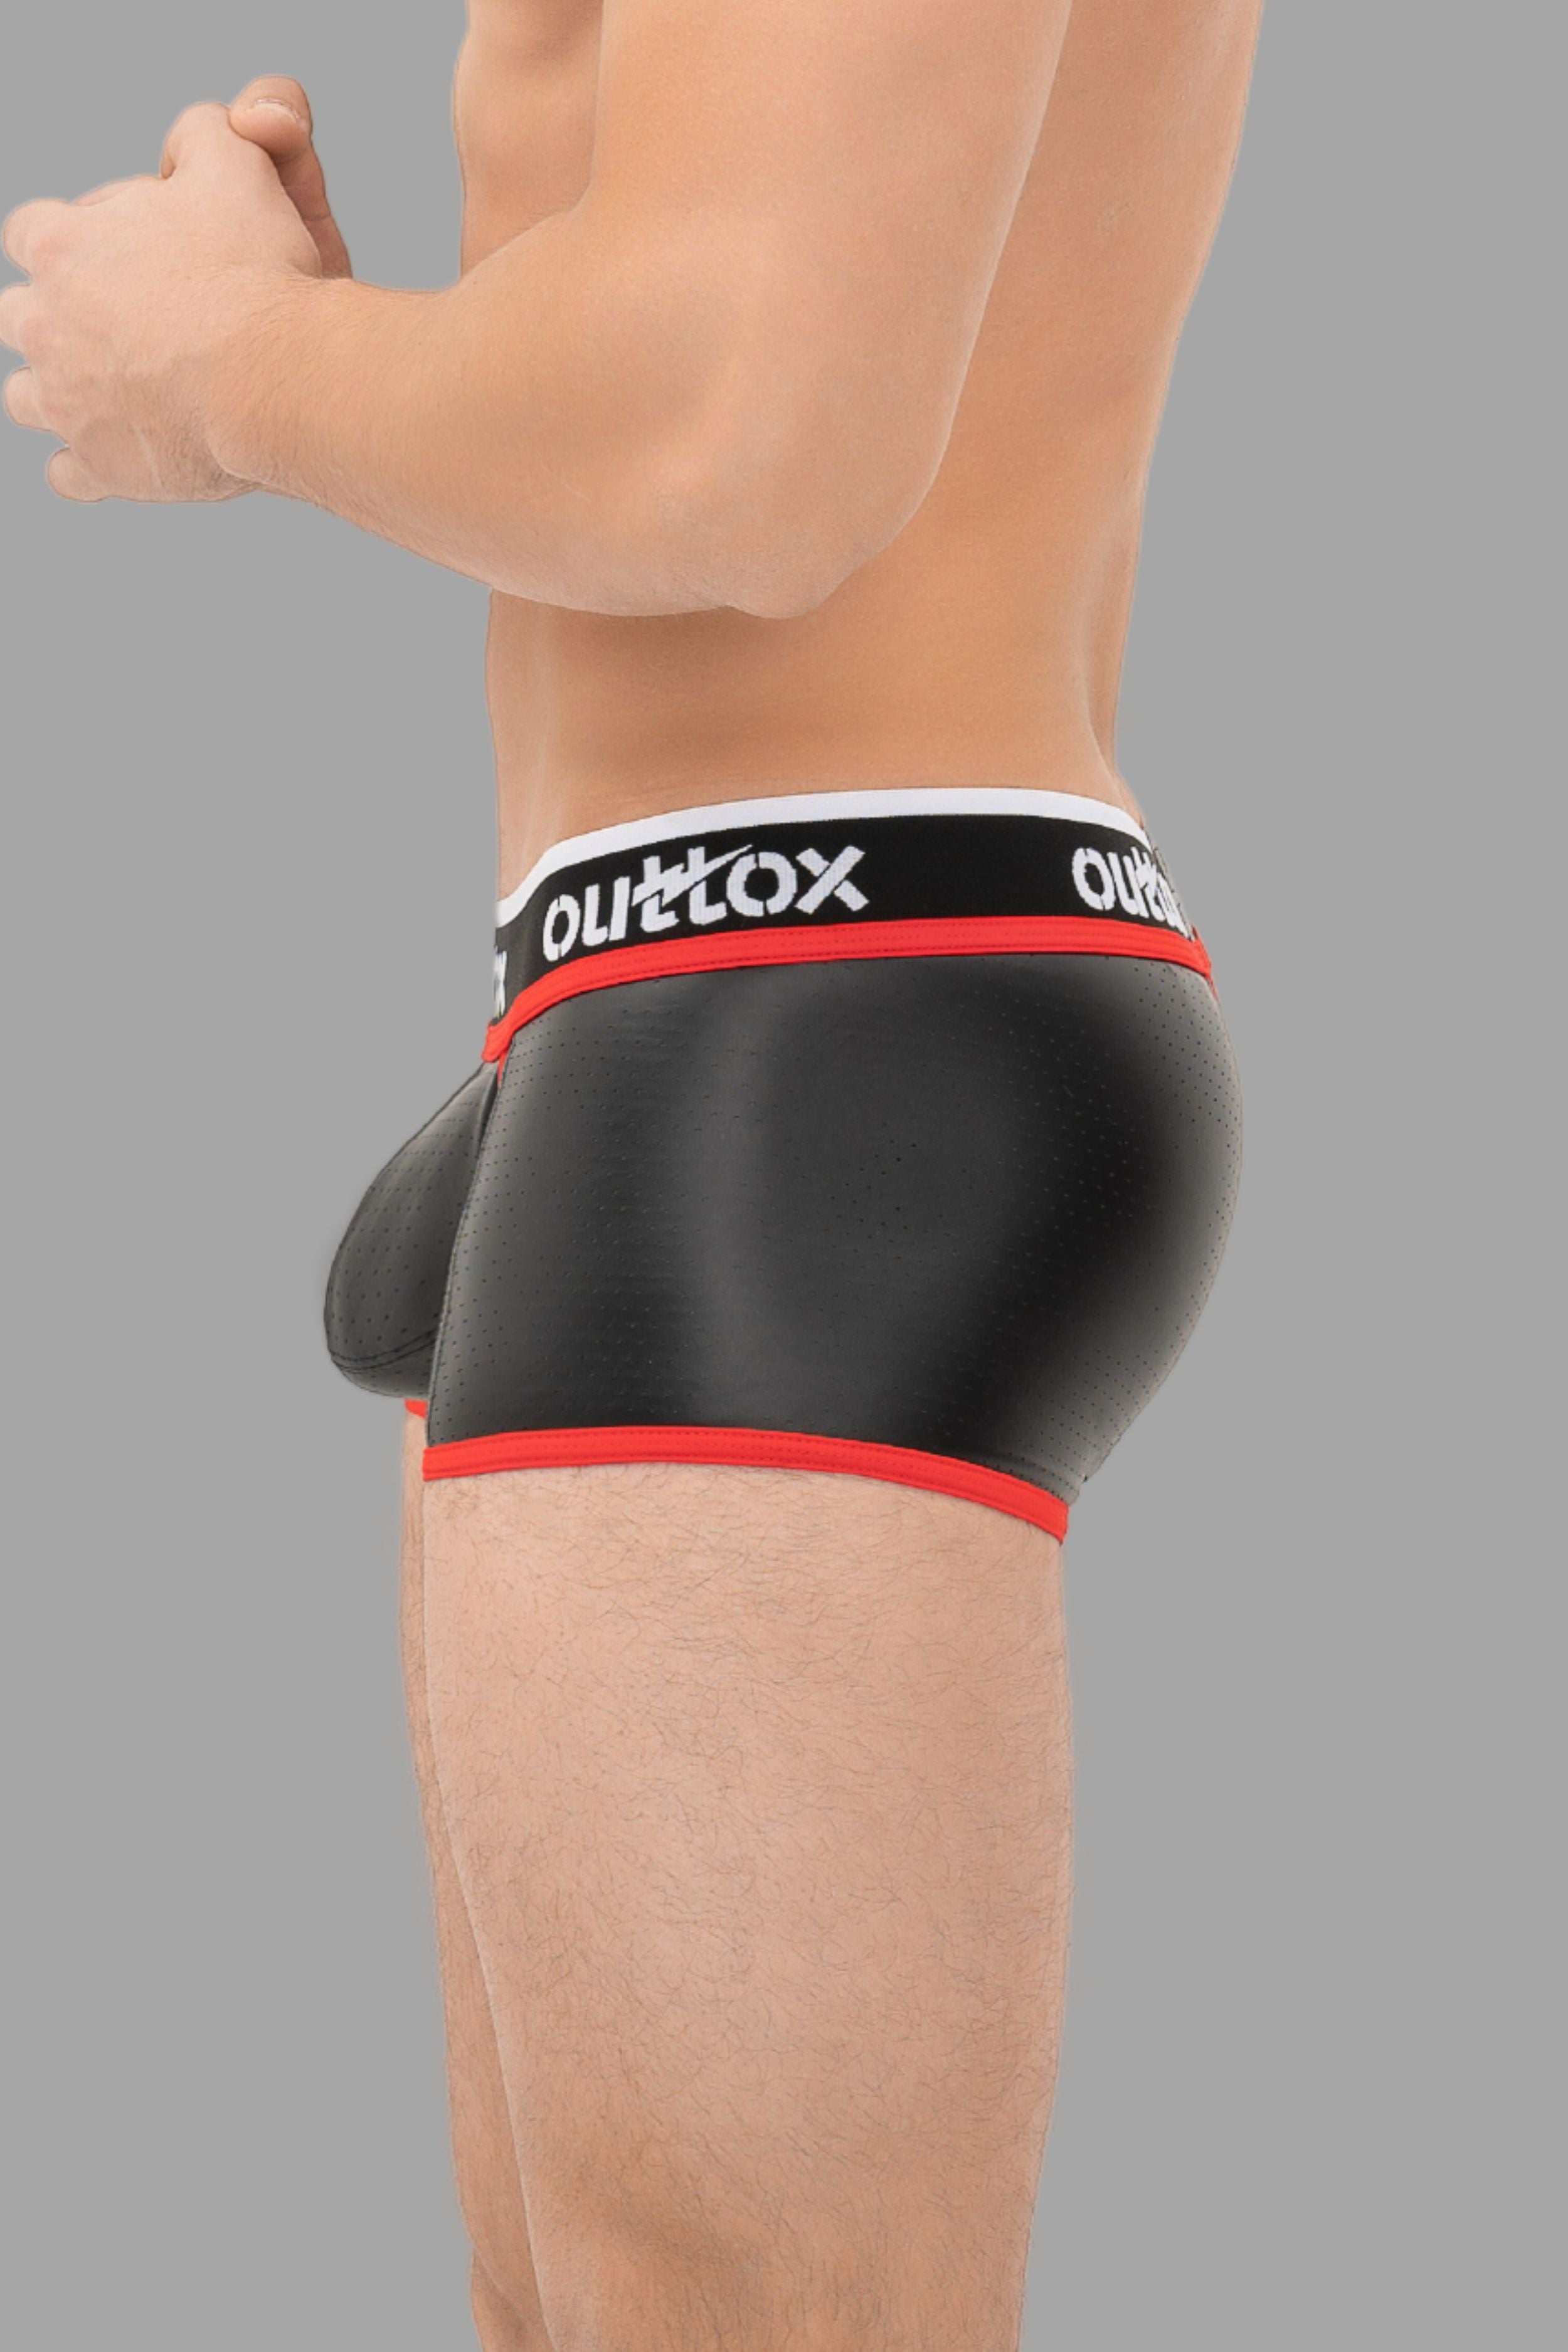 Outtox. Gewickelte Shorts mit Druckknopfverschluss. Schwarz+Rot